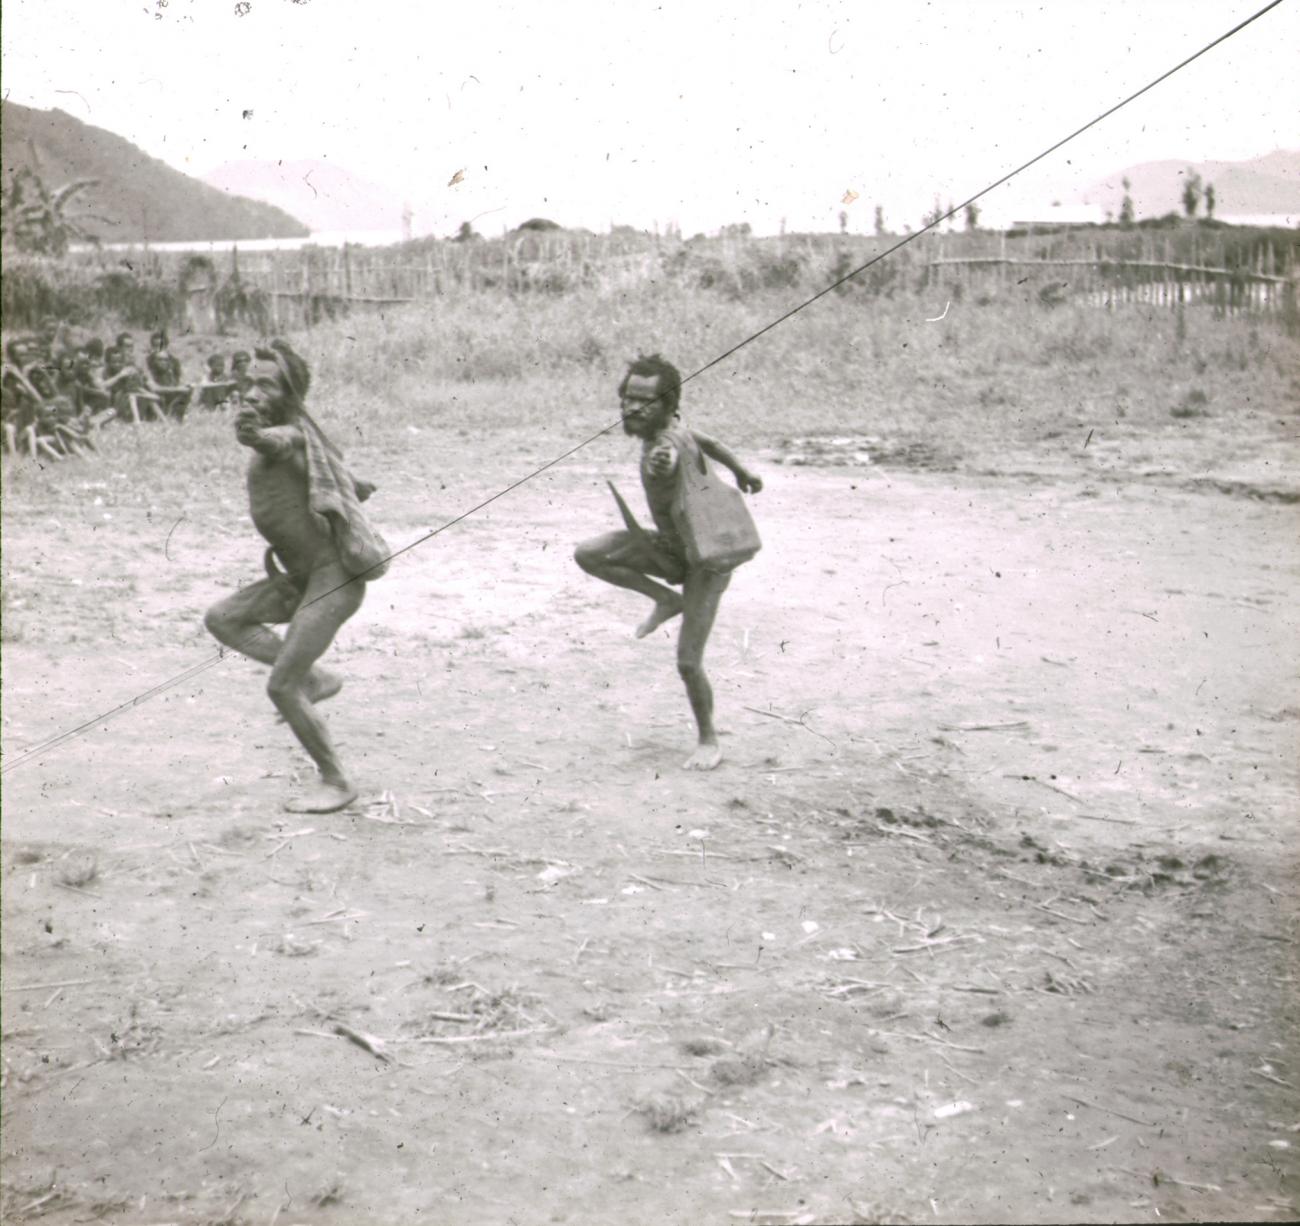 BD/329/40 - 
Twee Papoea-mannen voeren een dans uit onder toezien van stamgenoten
